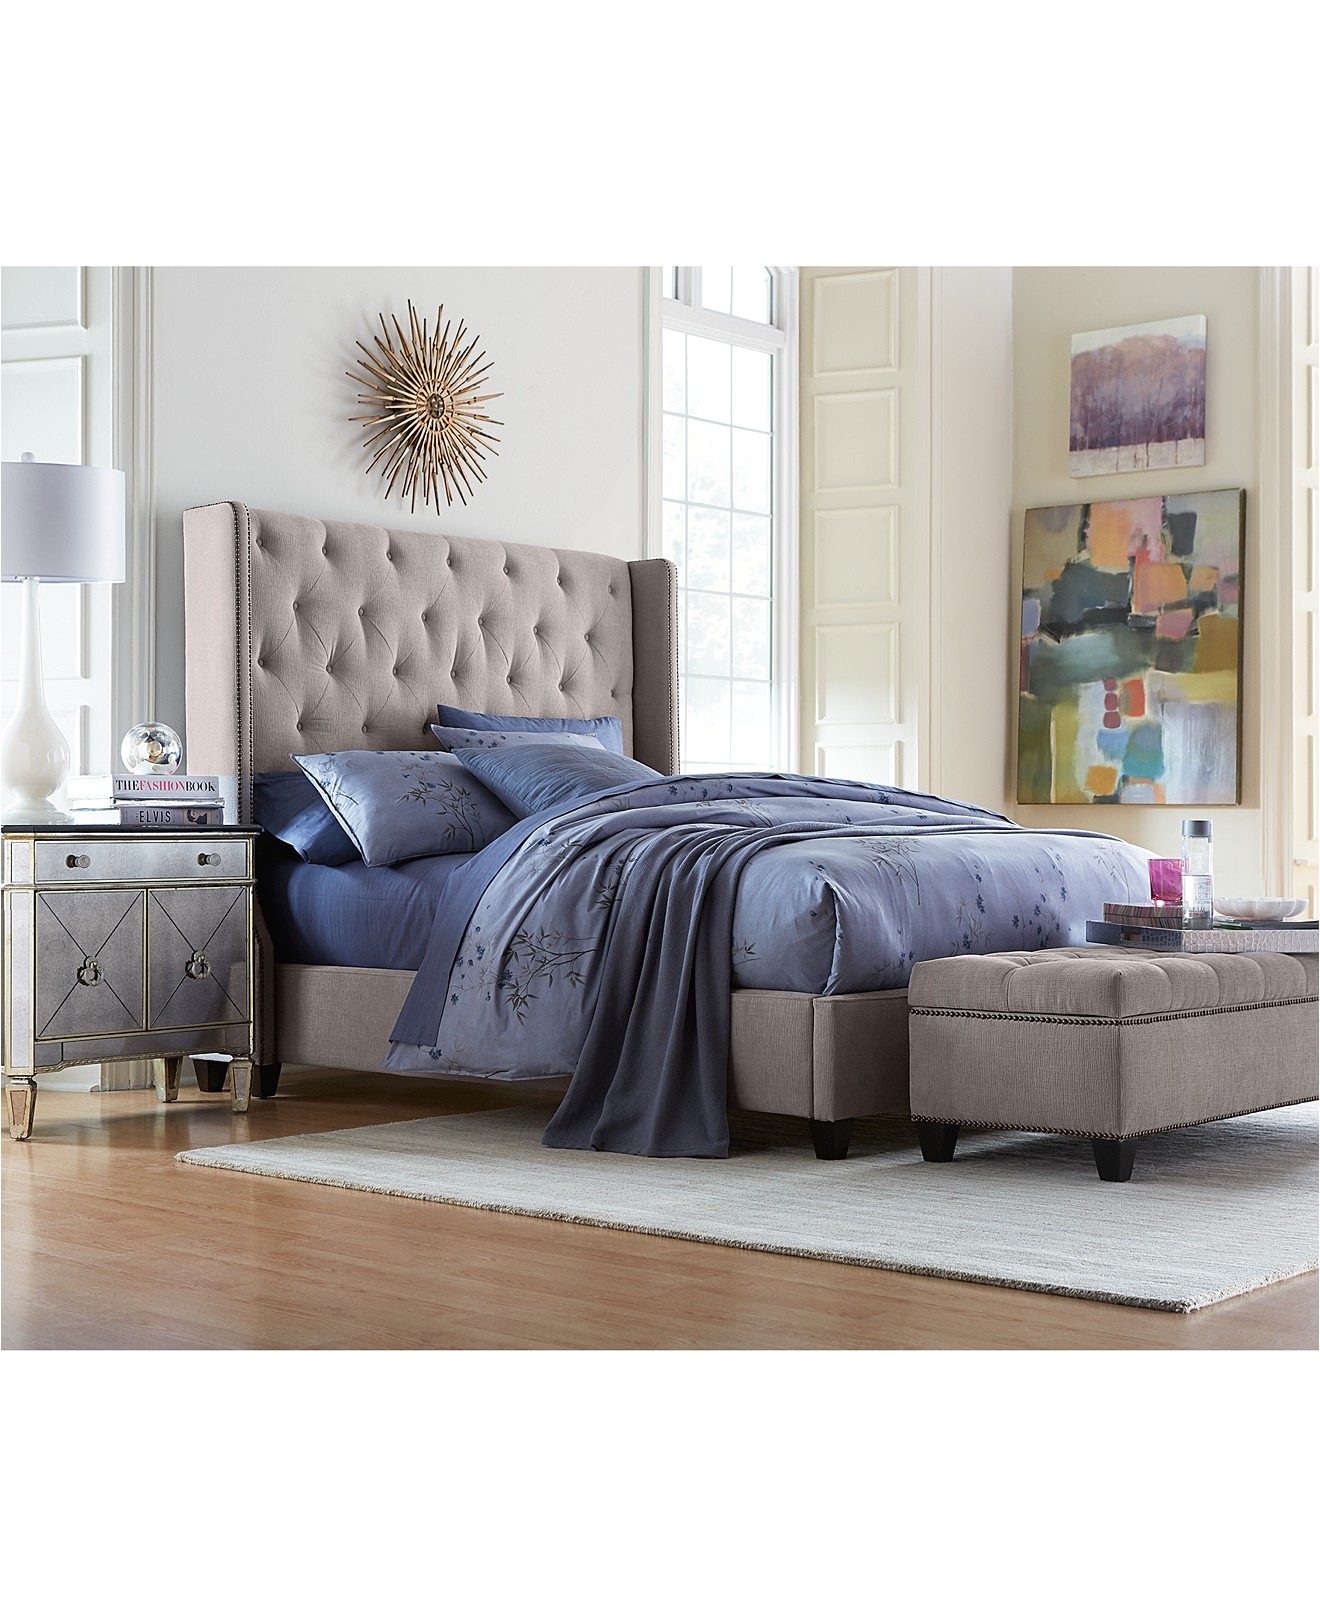 macys bedroom furniture storage bed macys macy s queen popular bedroom furniture pertaining to osopalas com